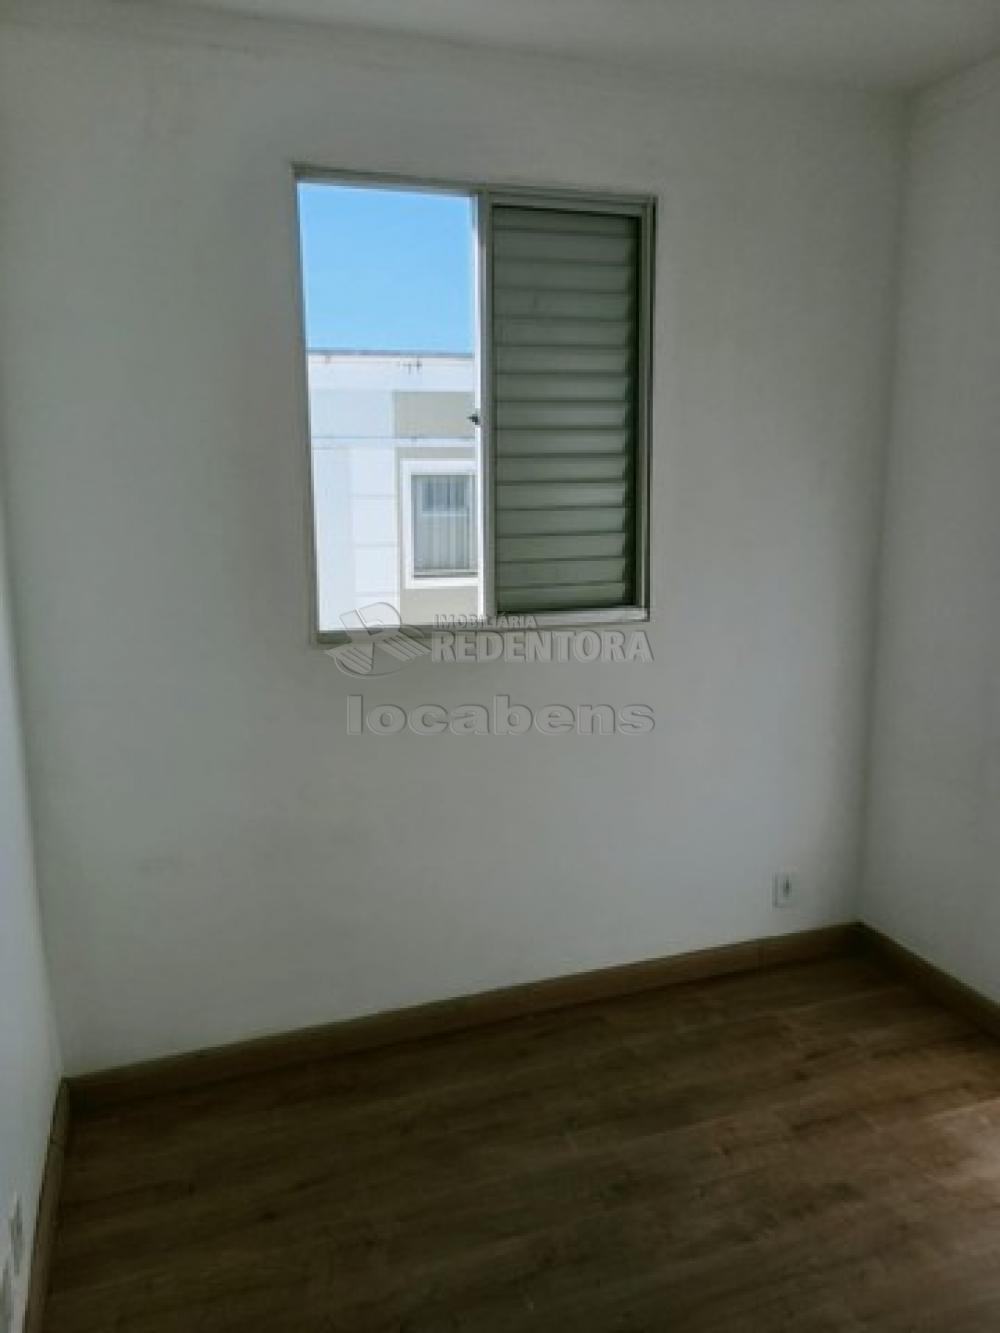 Alugar Apartamento / Padrão em São José do Rio Preto apenas R$ 622,00 - Foto 10